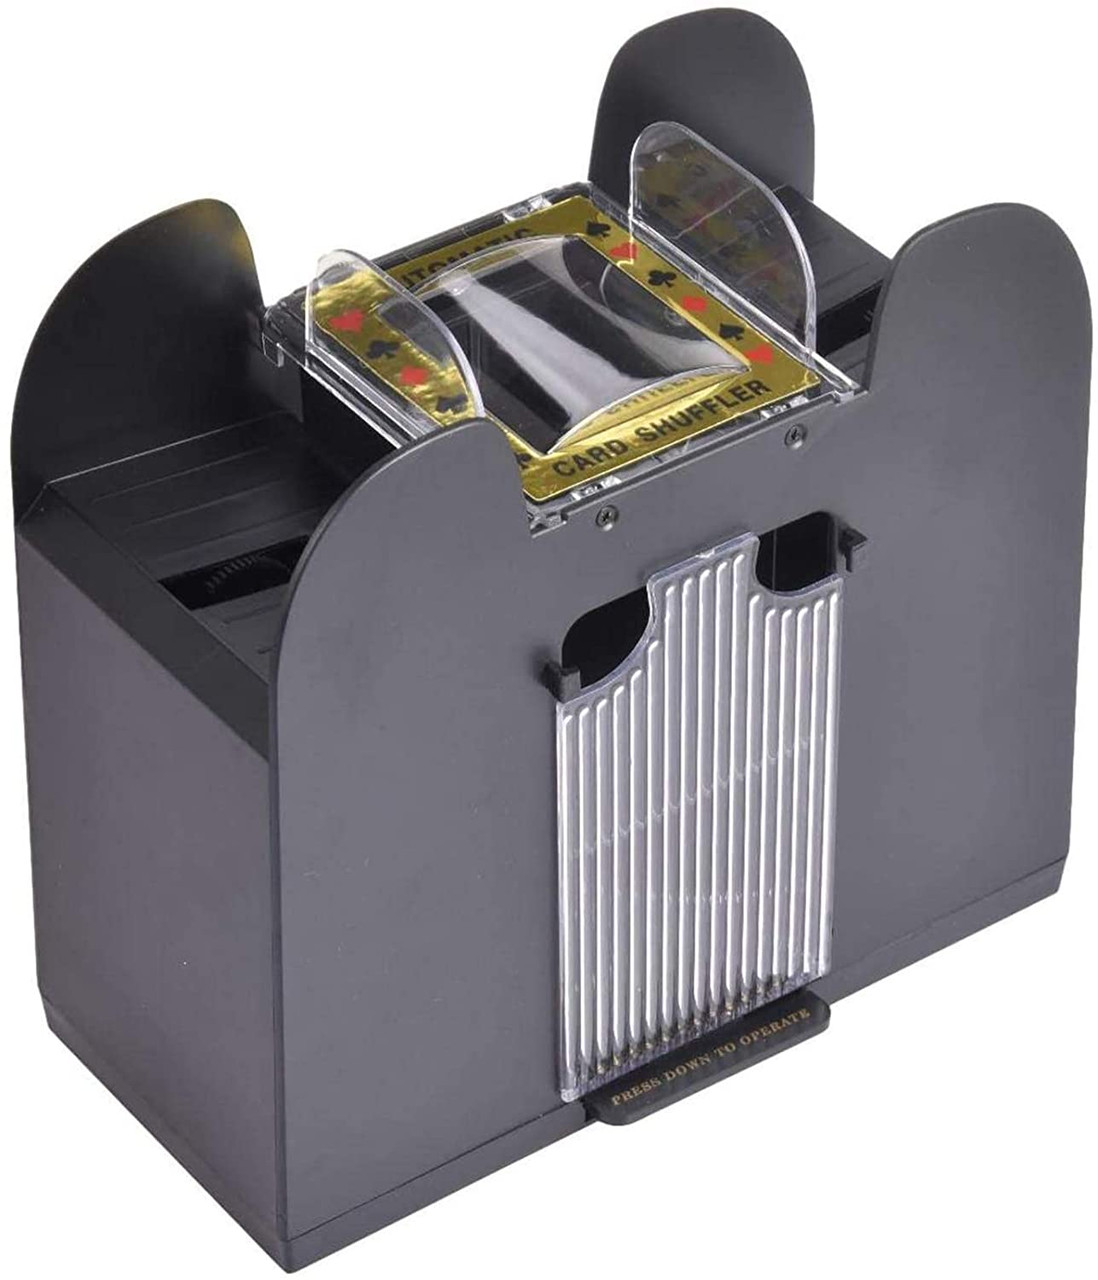 6-Deck Automatic Card Shuffler Machine Electronic Shuffle Playing Card CHH New 